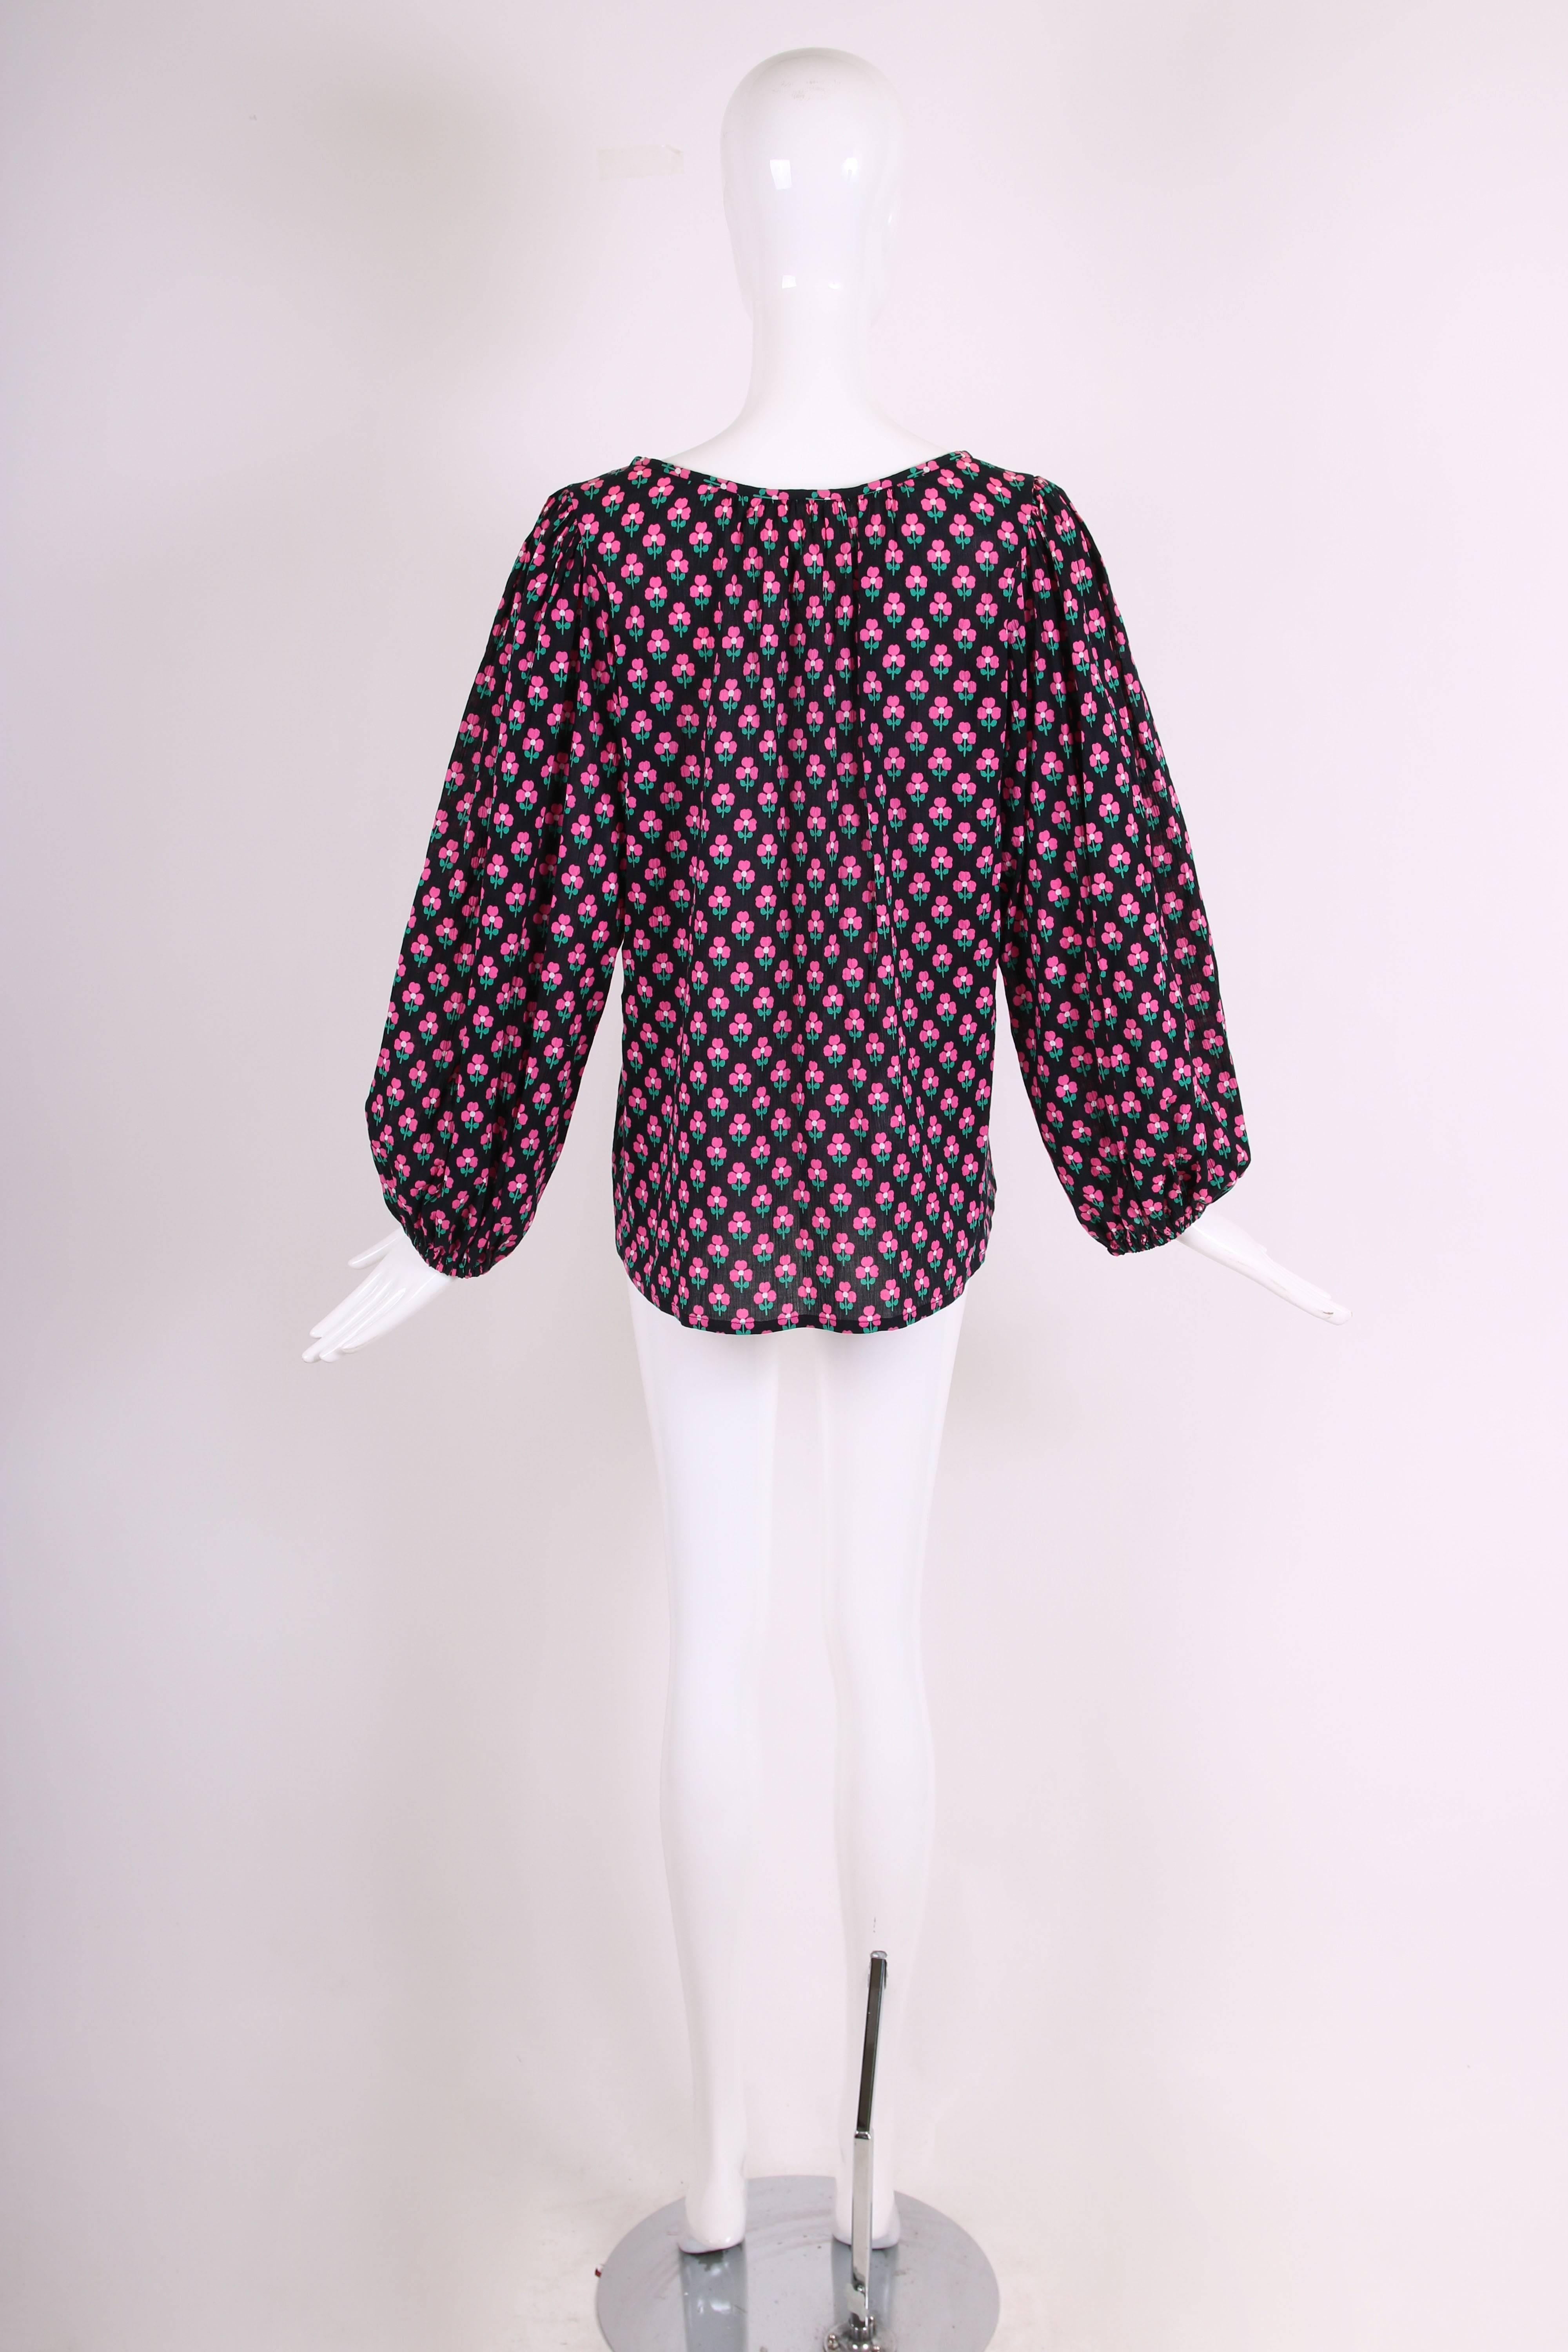 Yves Saint Laurent Pink / Black Clover Print Cotton Peasant Blouse w / Neck Ties 1